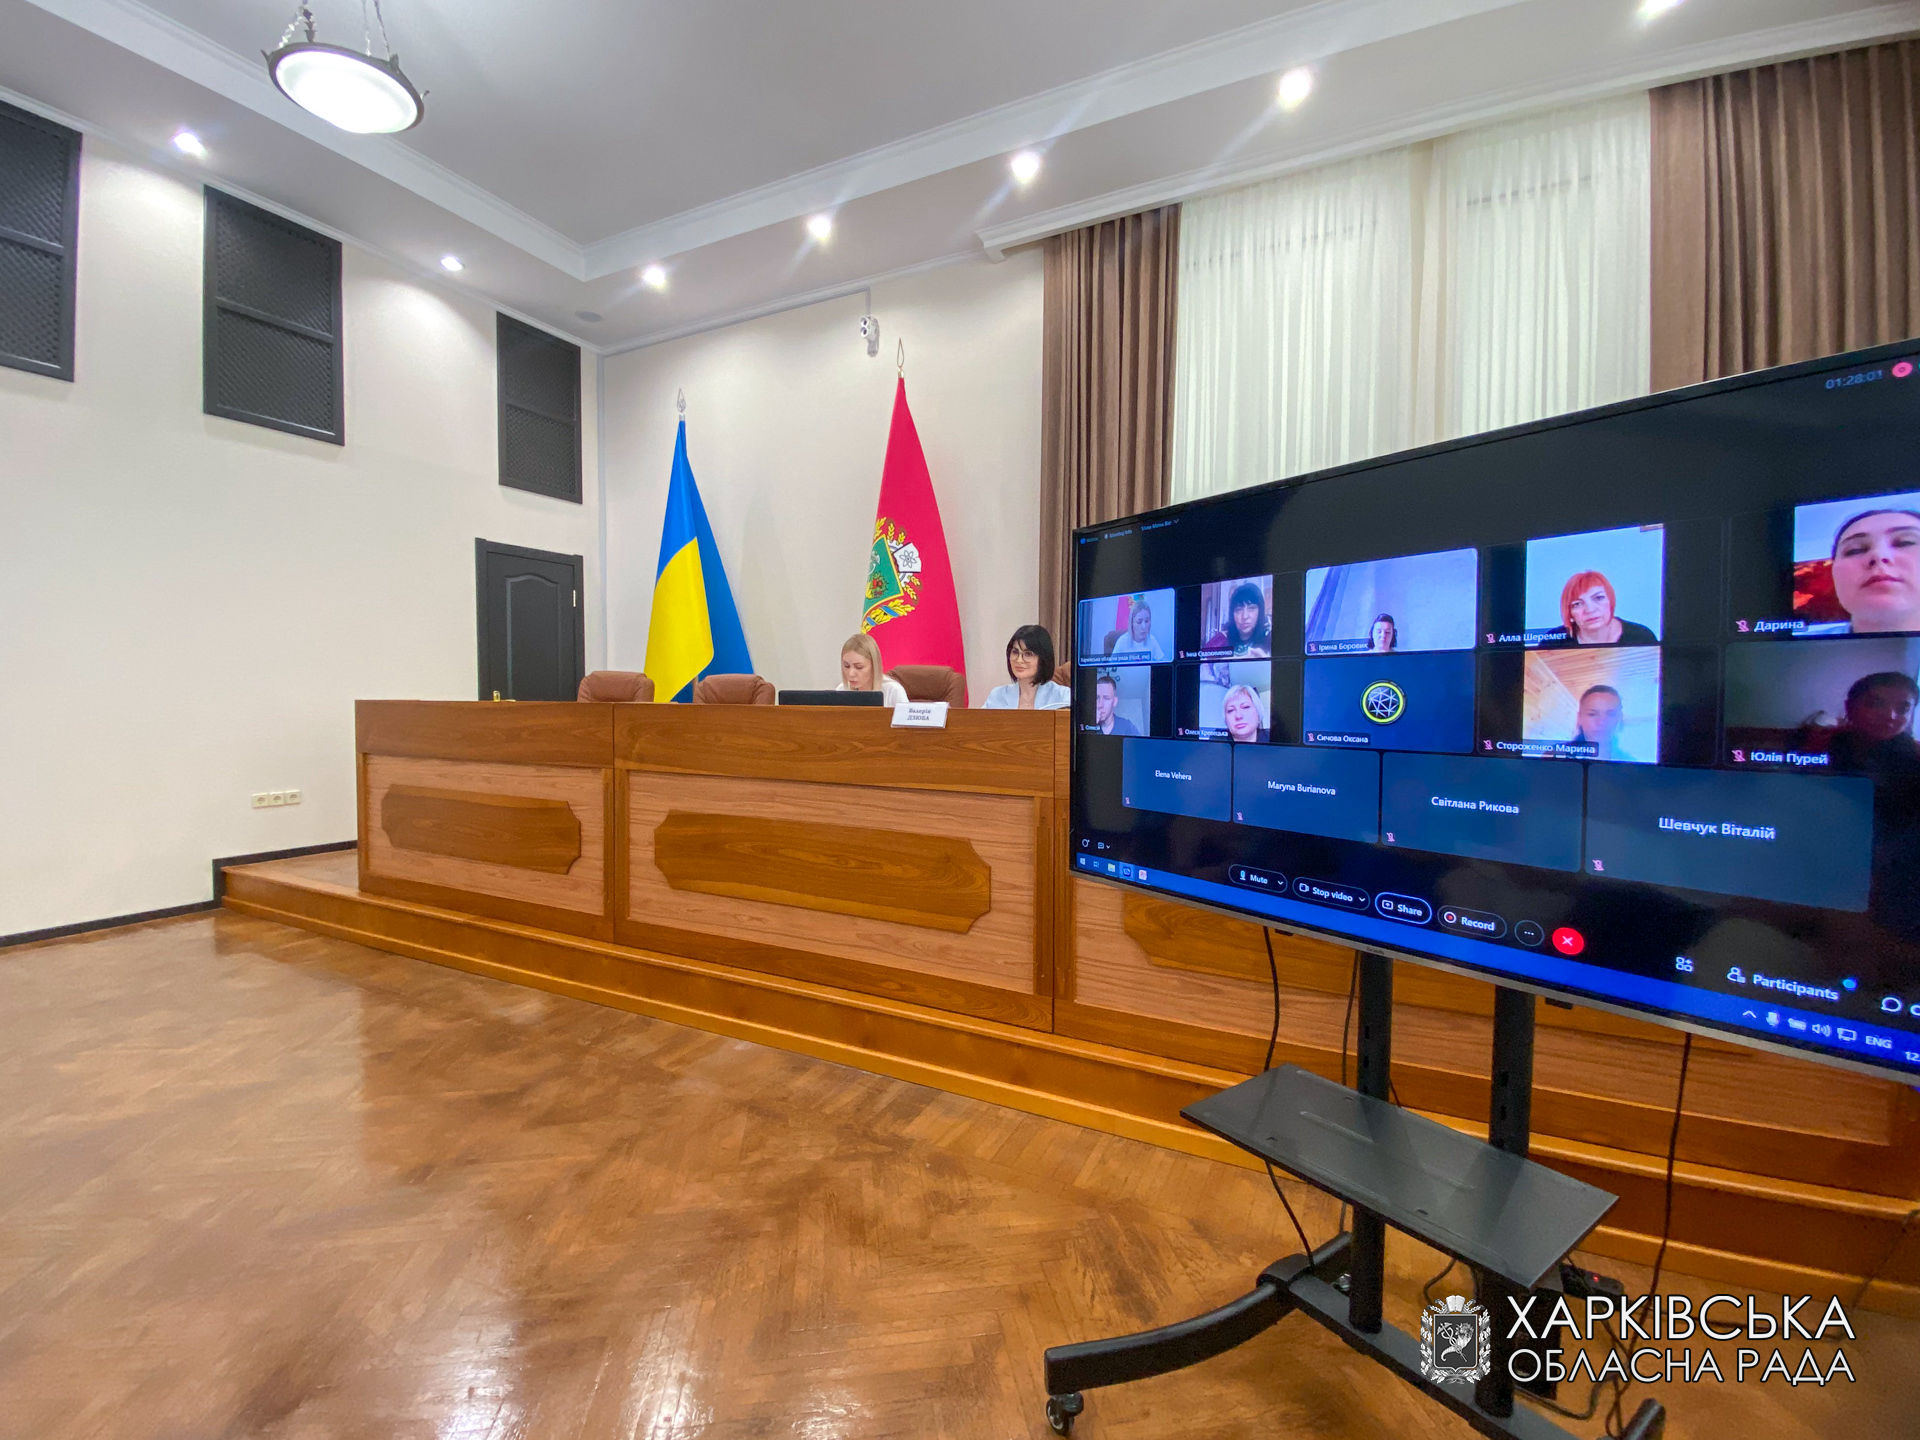 Колектив виконавчого апарату обласної ради прослухав інструктаж щодо протидії кібернетичним загрозам та профілактики і попередженню корупційних правопорушень